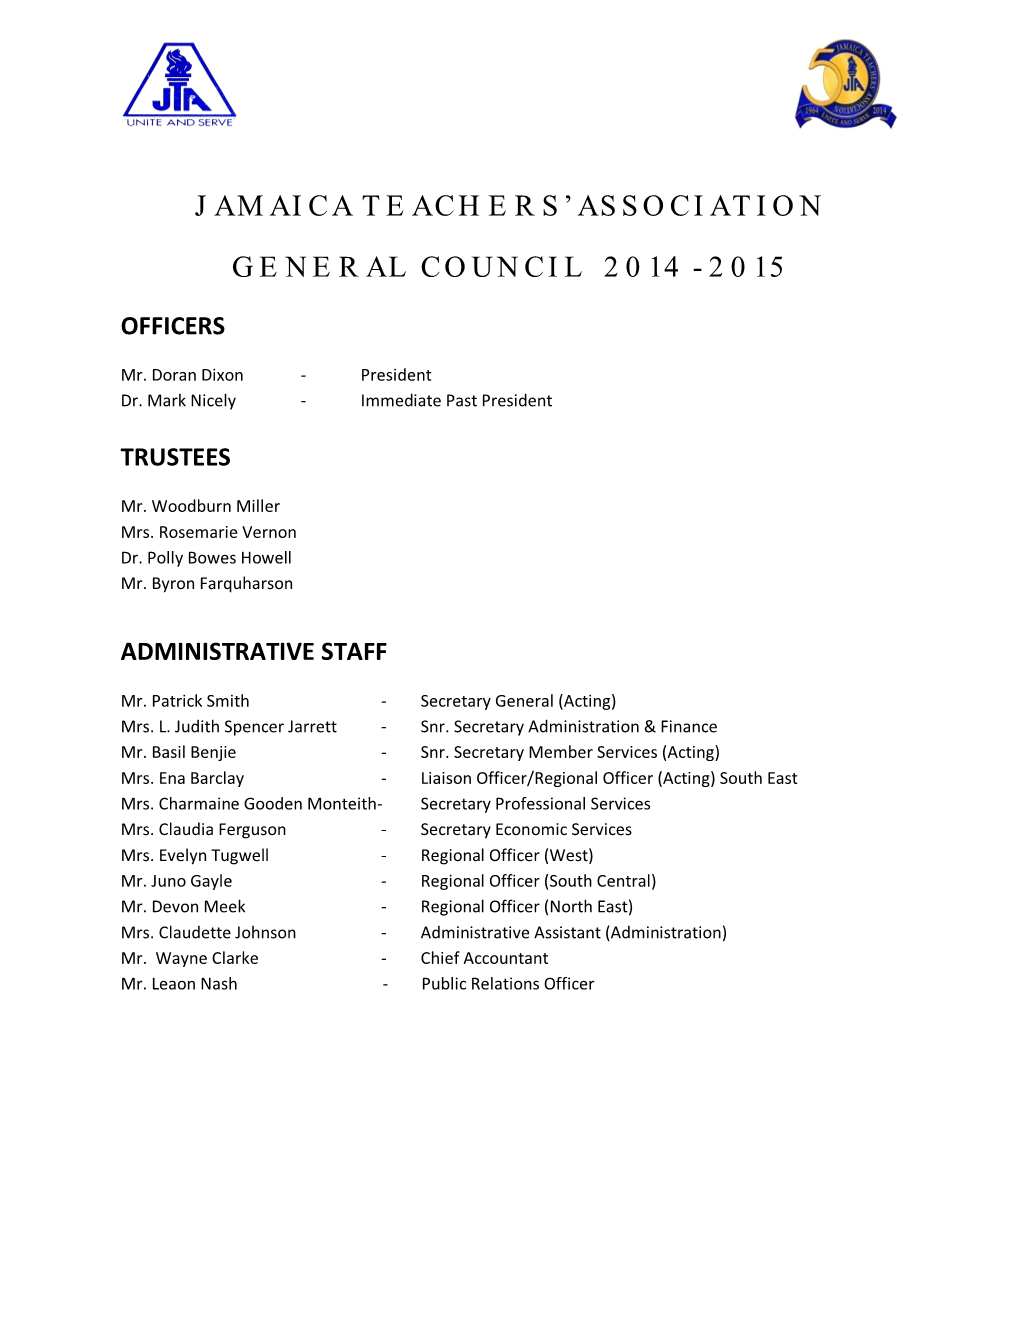 Jamaica Teachers' Association General Council 2014